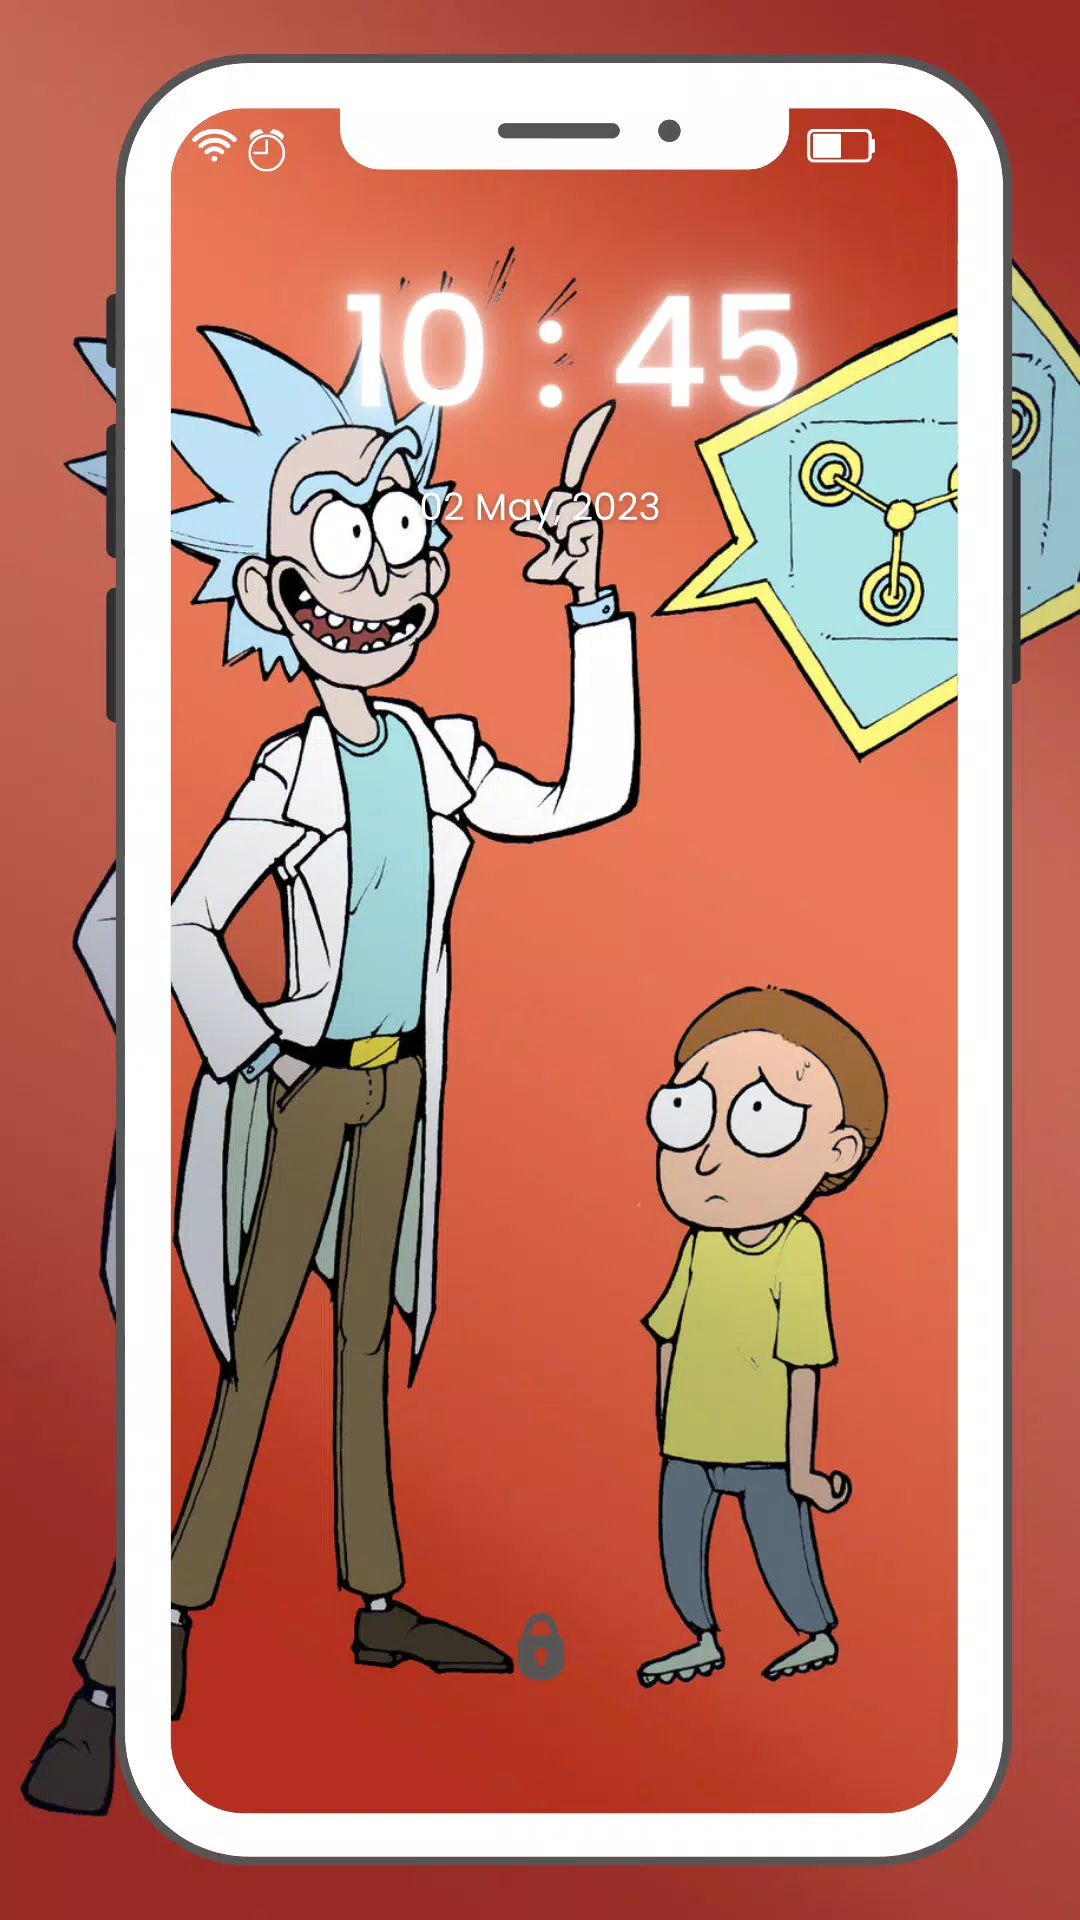 Rick And Morty Wallpaper 4K para Android - Download